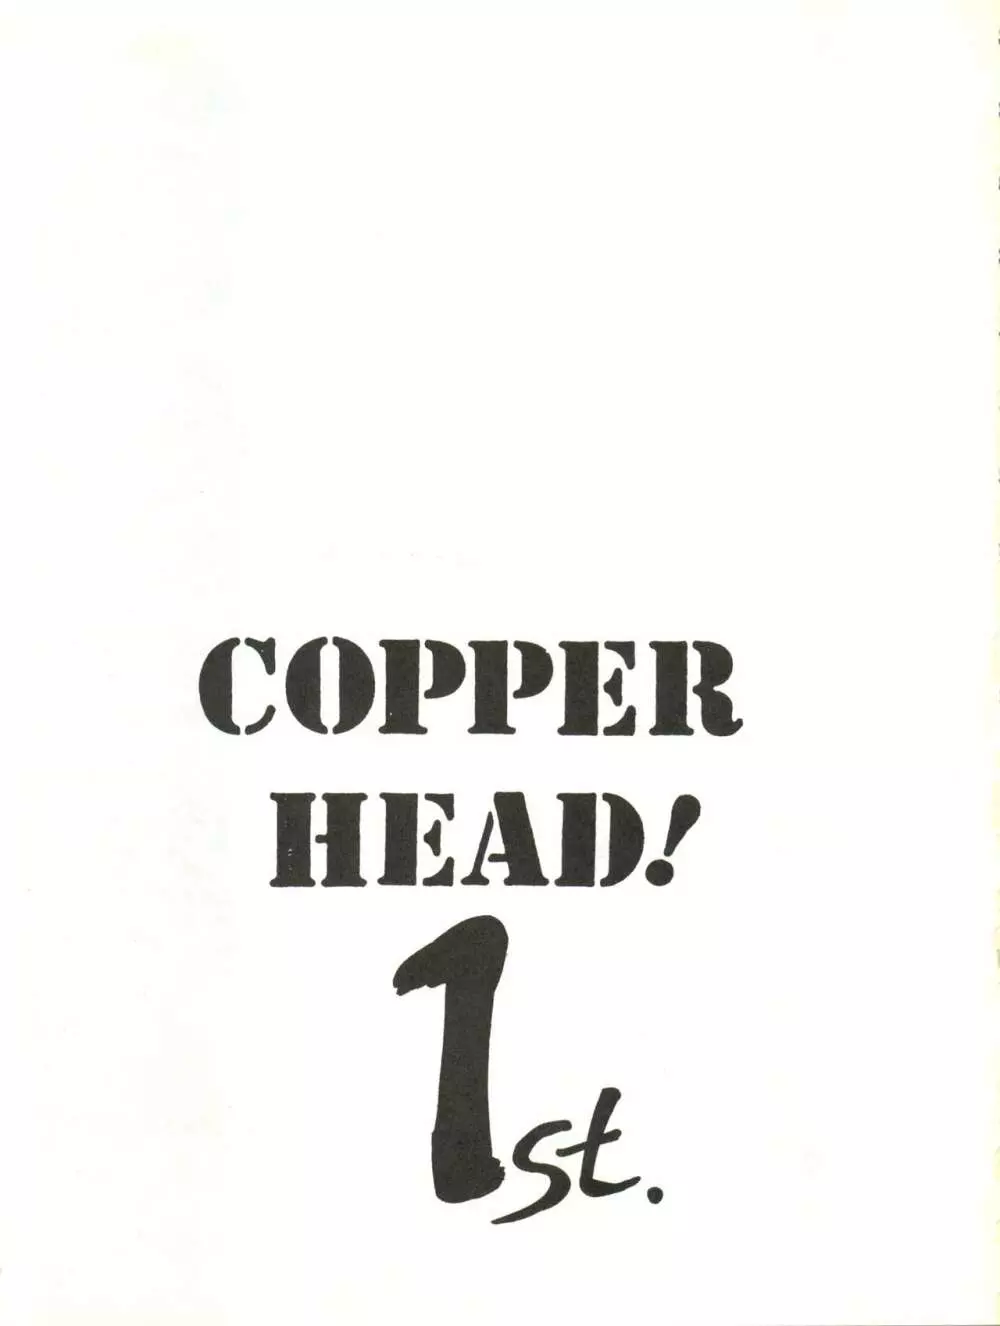 COPPER HEAD! - page3